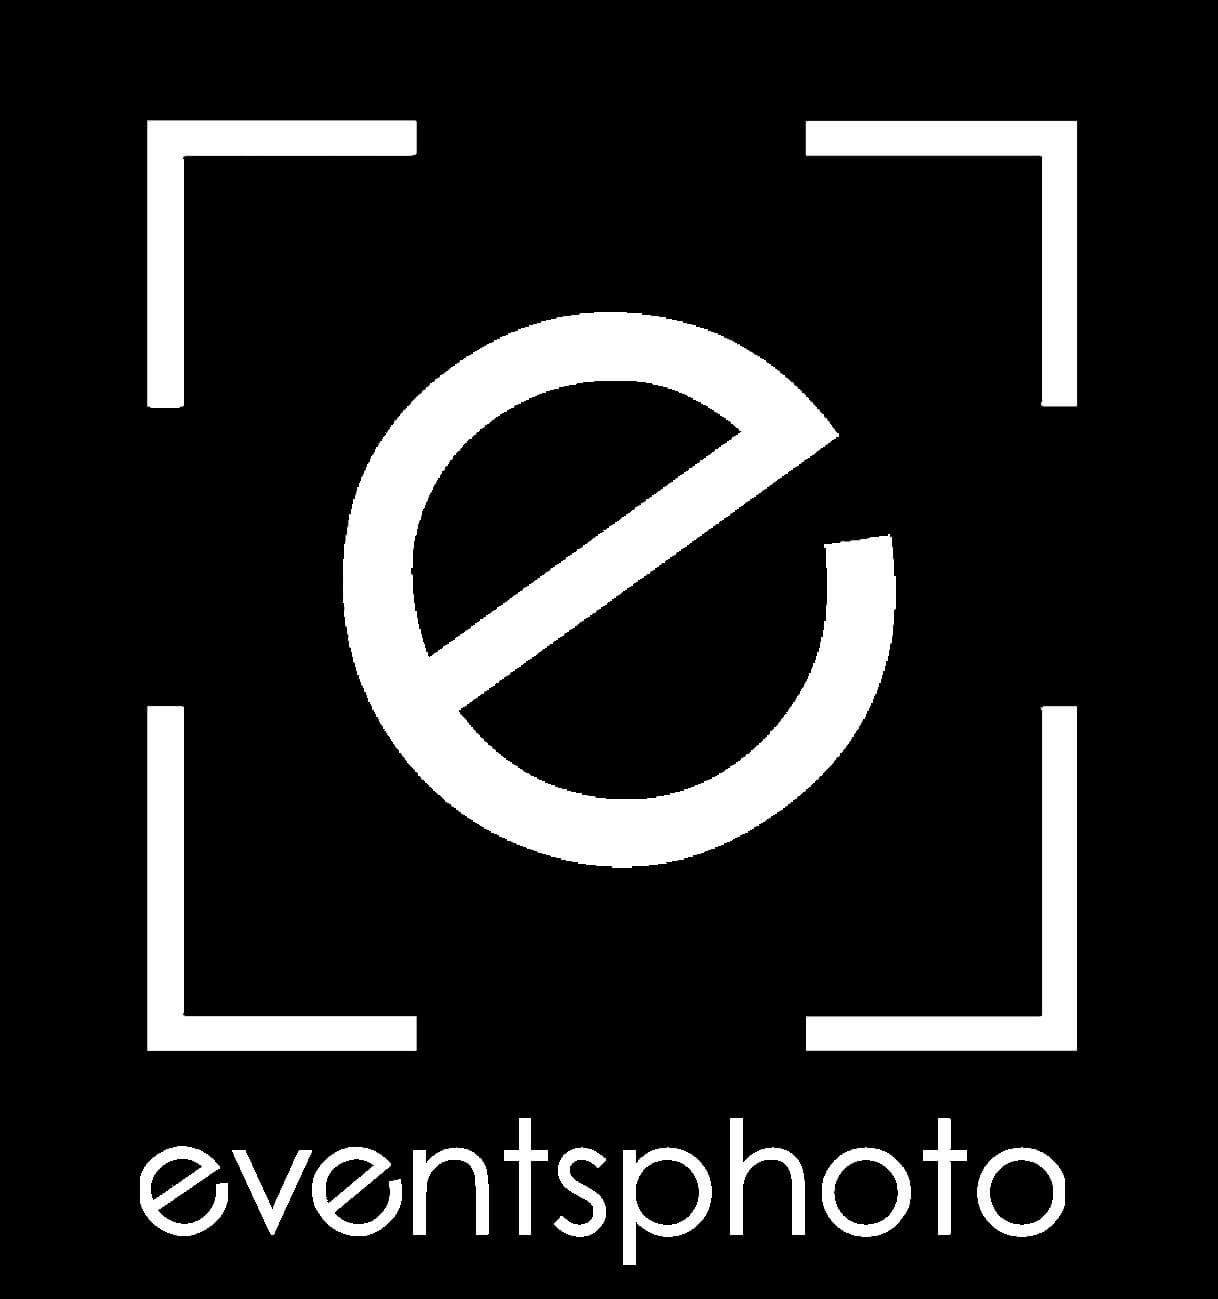 Fotografos para eventos y publicidad